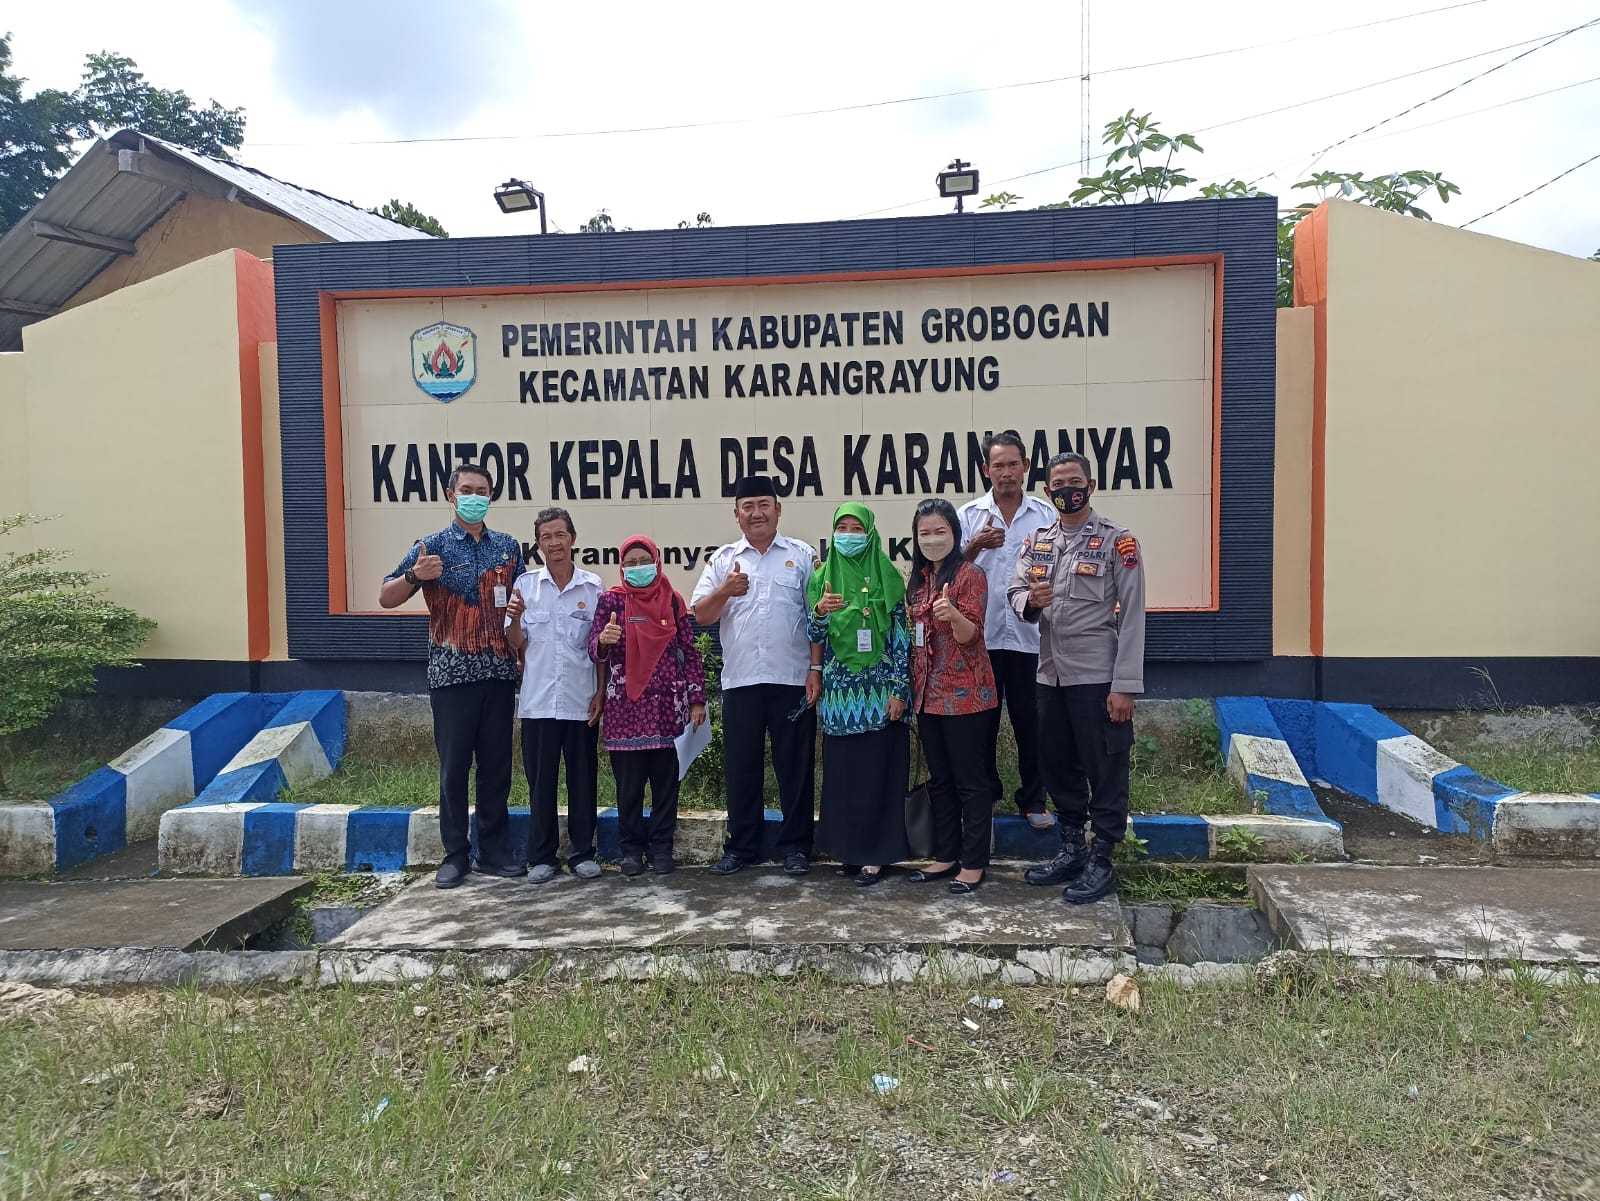 Verval Data Desa Karanganyar Kabupaten Grobogan sebagai Desa dampingan BKIM Provinsi Jawa Tengah di Tahun 2023